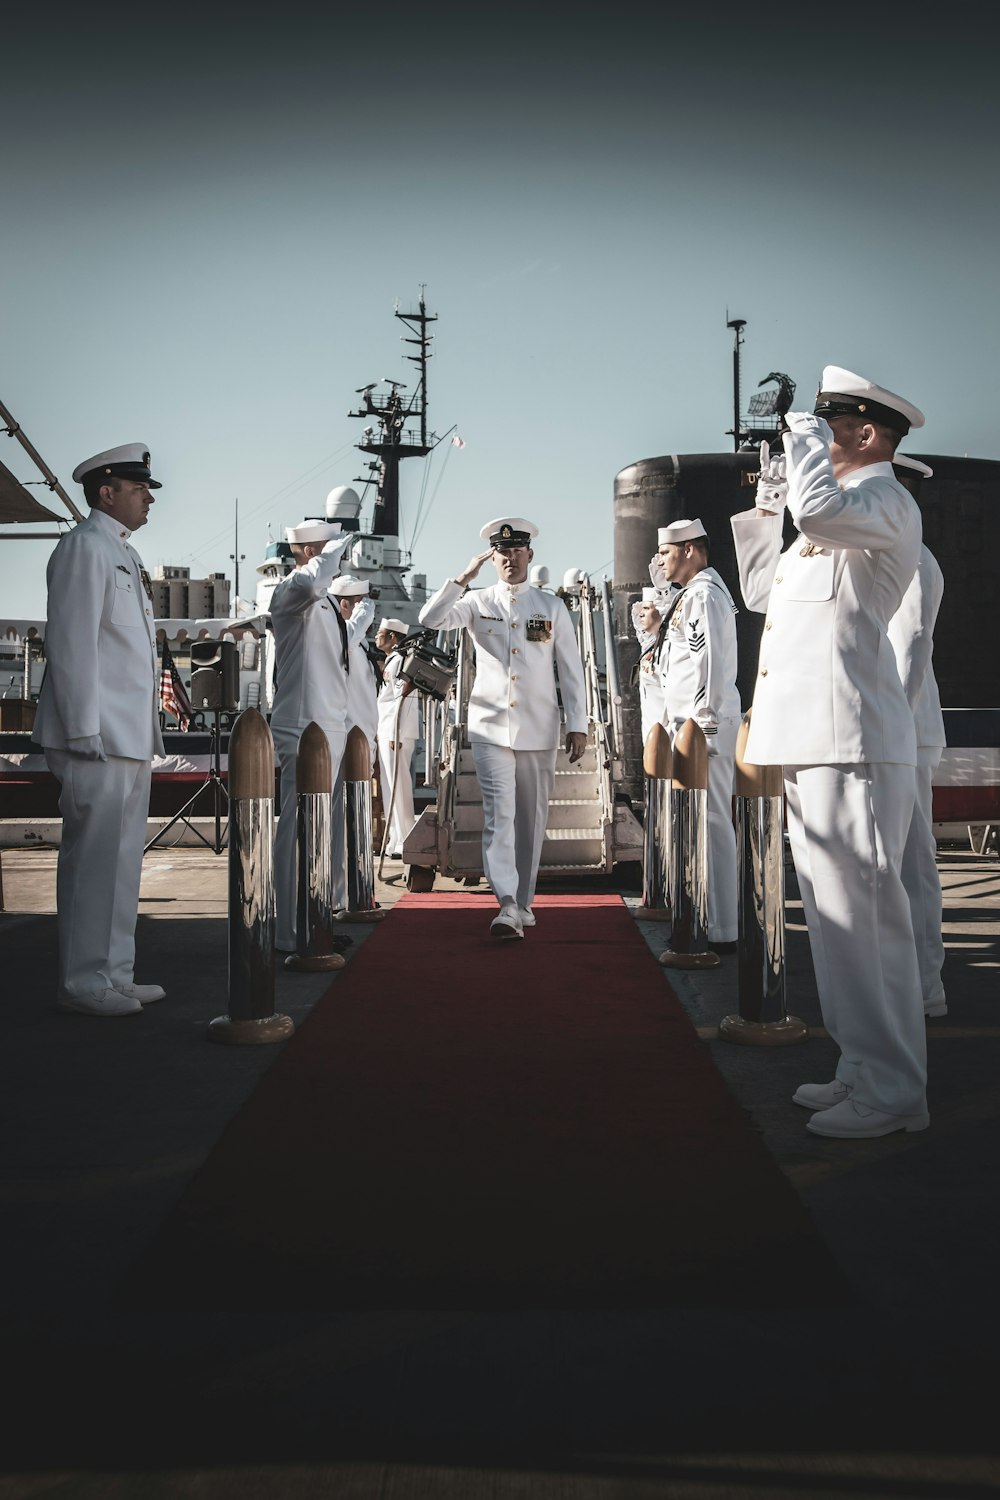 1K+ fotos de uniformes de la Marina | Descargar imágenes gratis en Unsplash